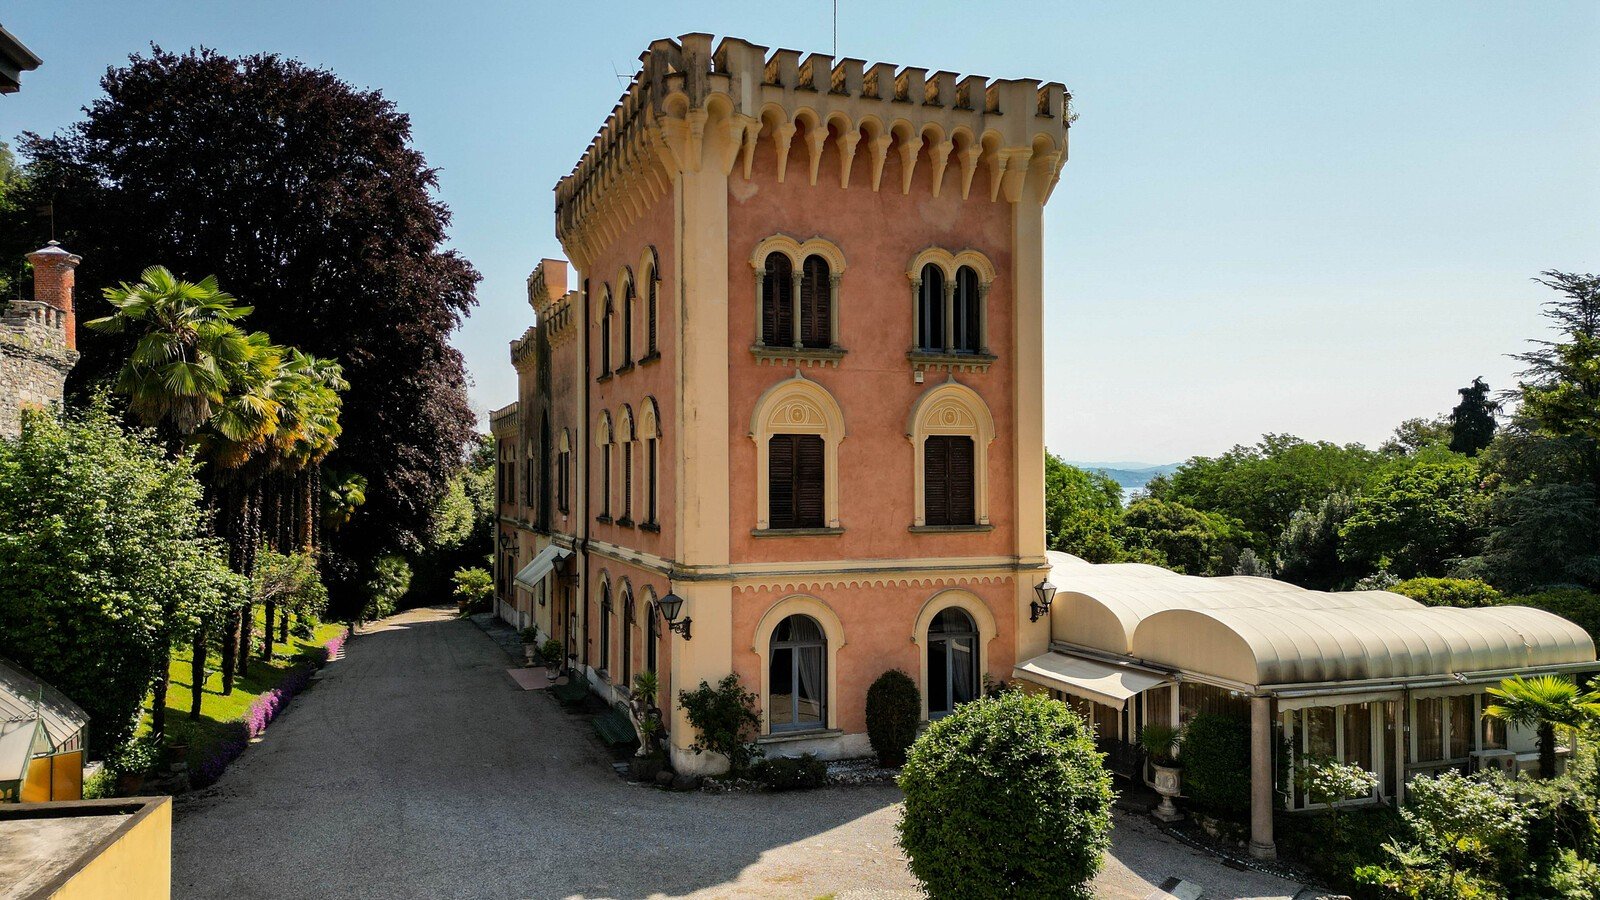 Francis York Neo-Romanesque castle in Lesa on Lake Maggiore 00038.jpg